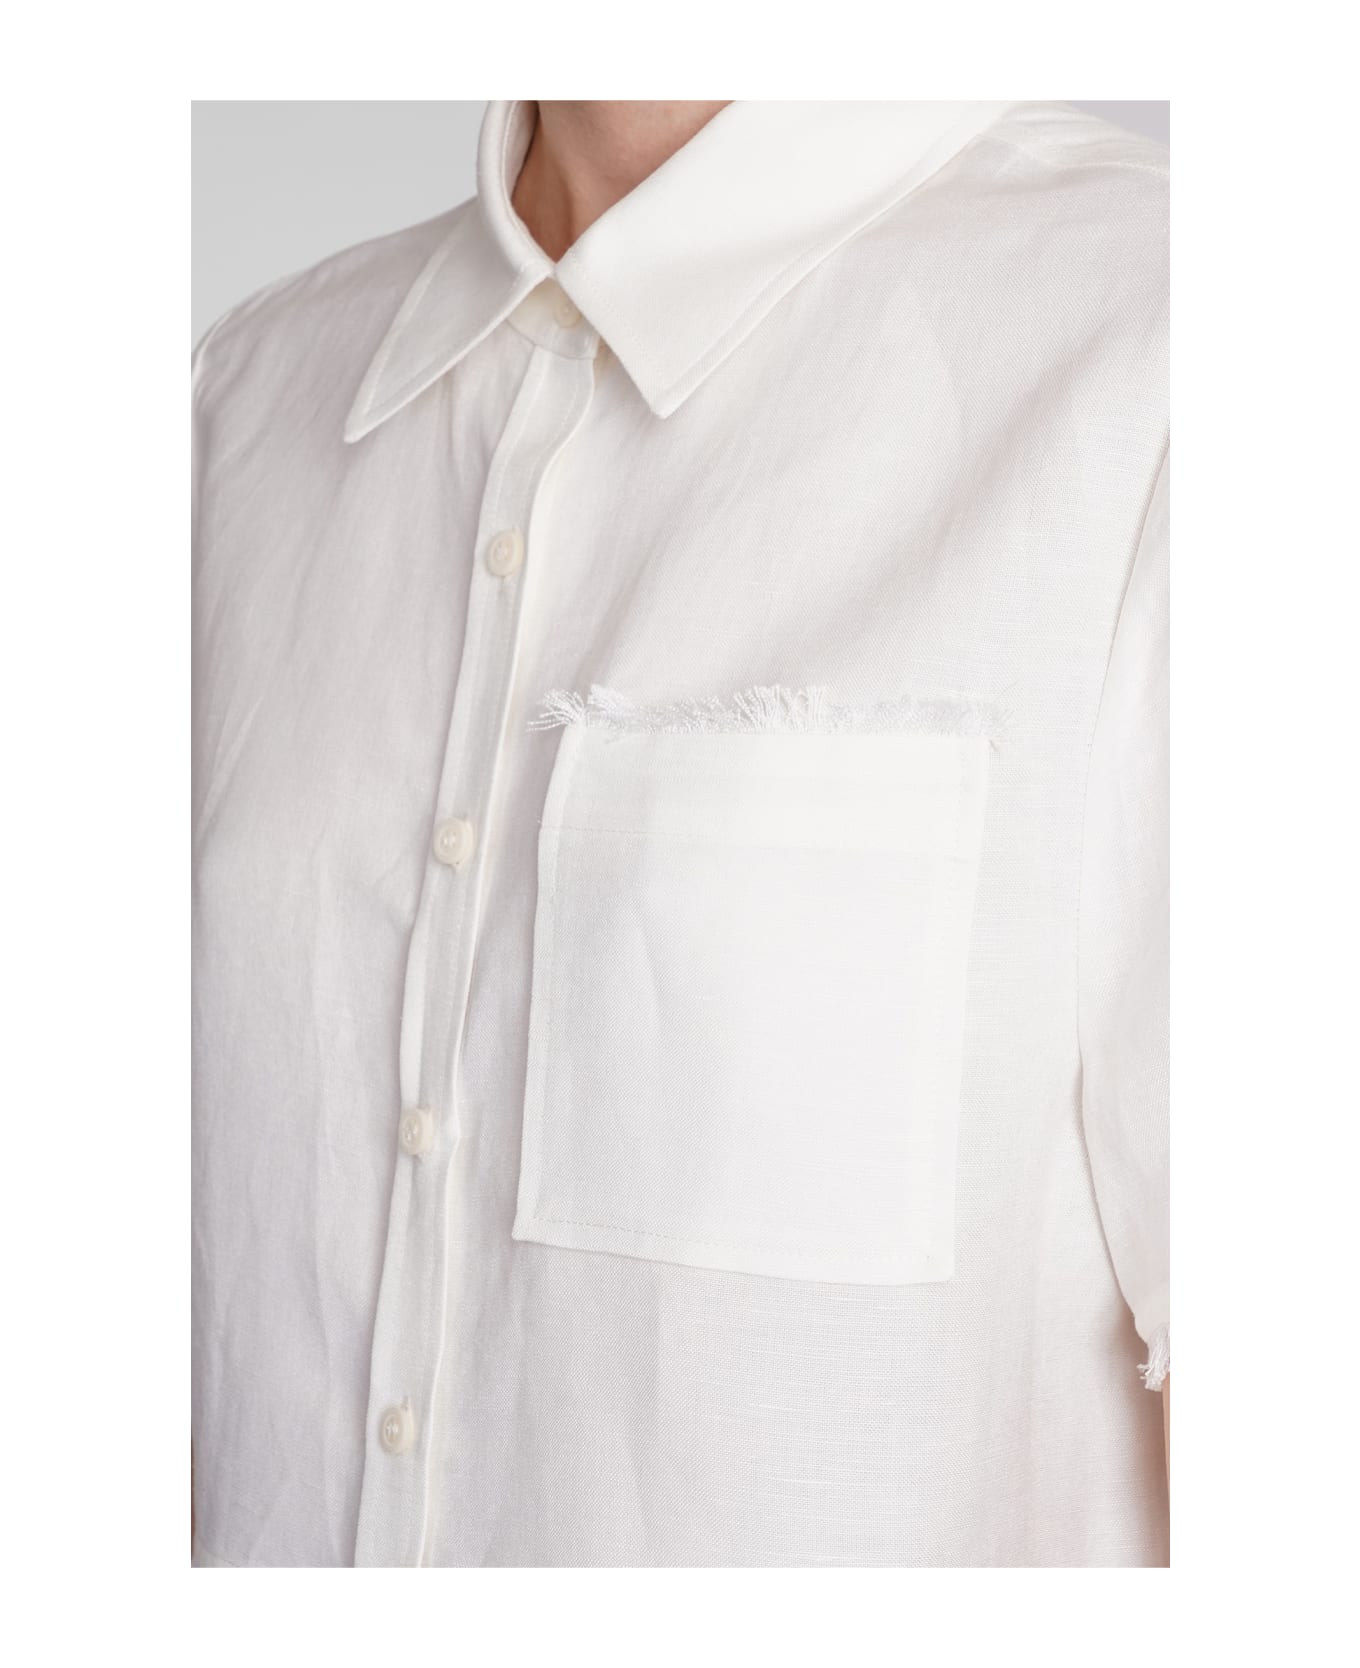 Simkhai Solange Shirt In White Linen - white シャツ